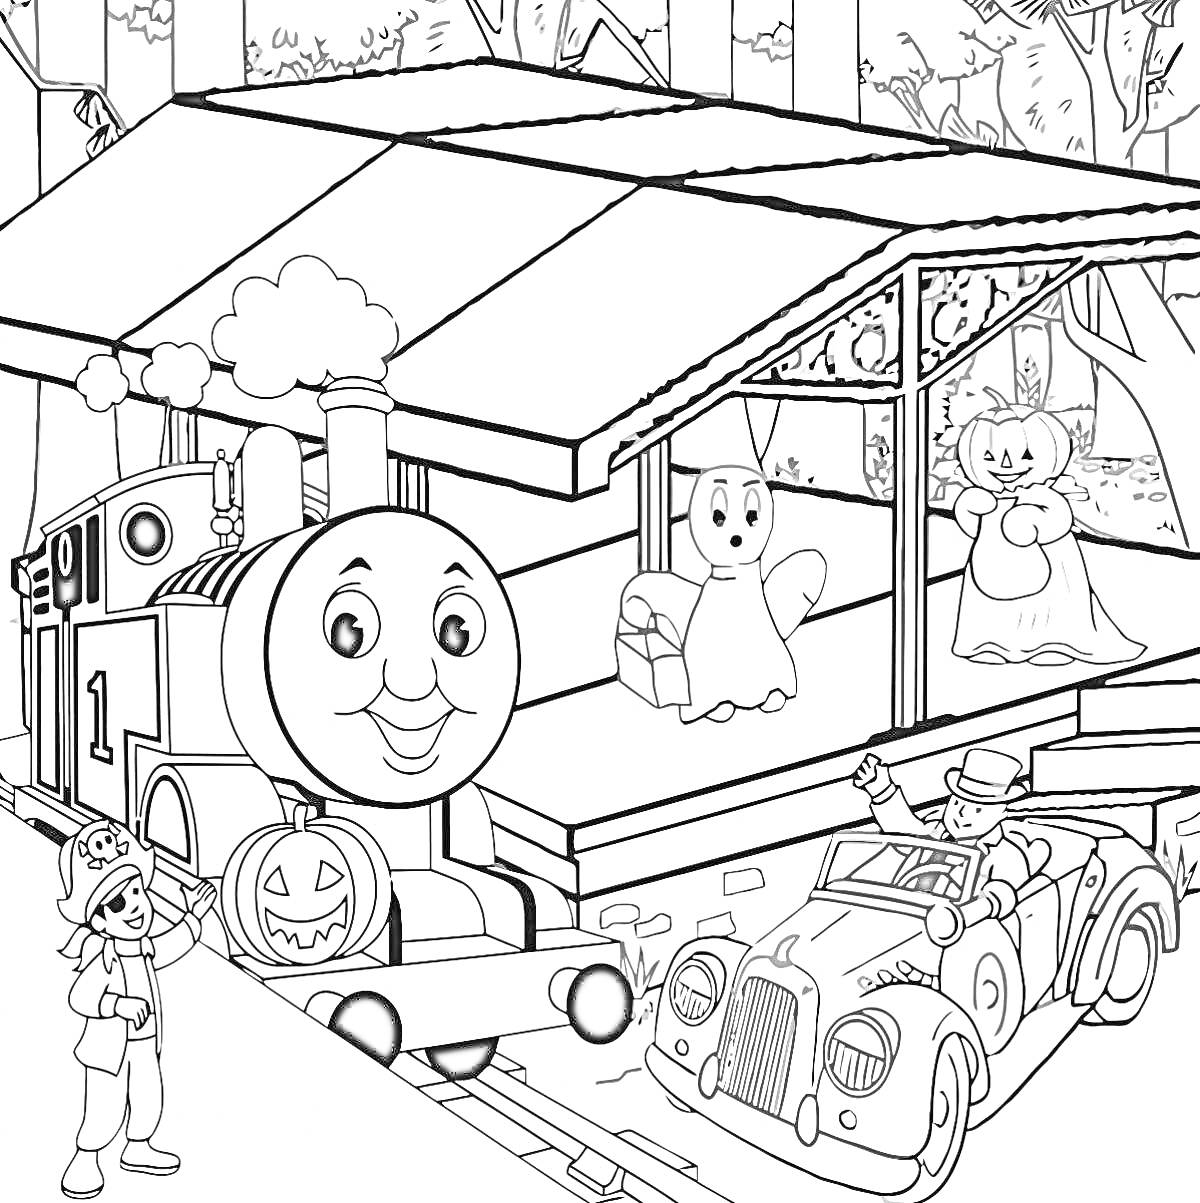 Раскраска Паровозик Томас на вокзале с привидениями, украшенный тыквой, человек у машины и кукольные персонажи